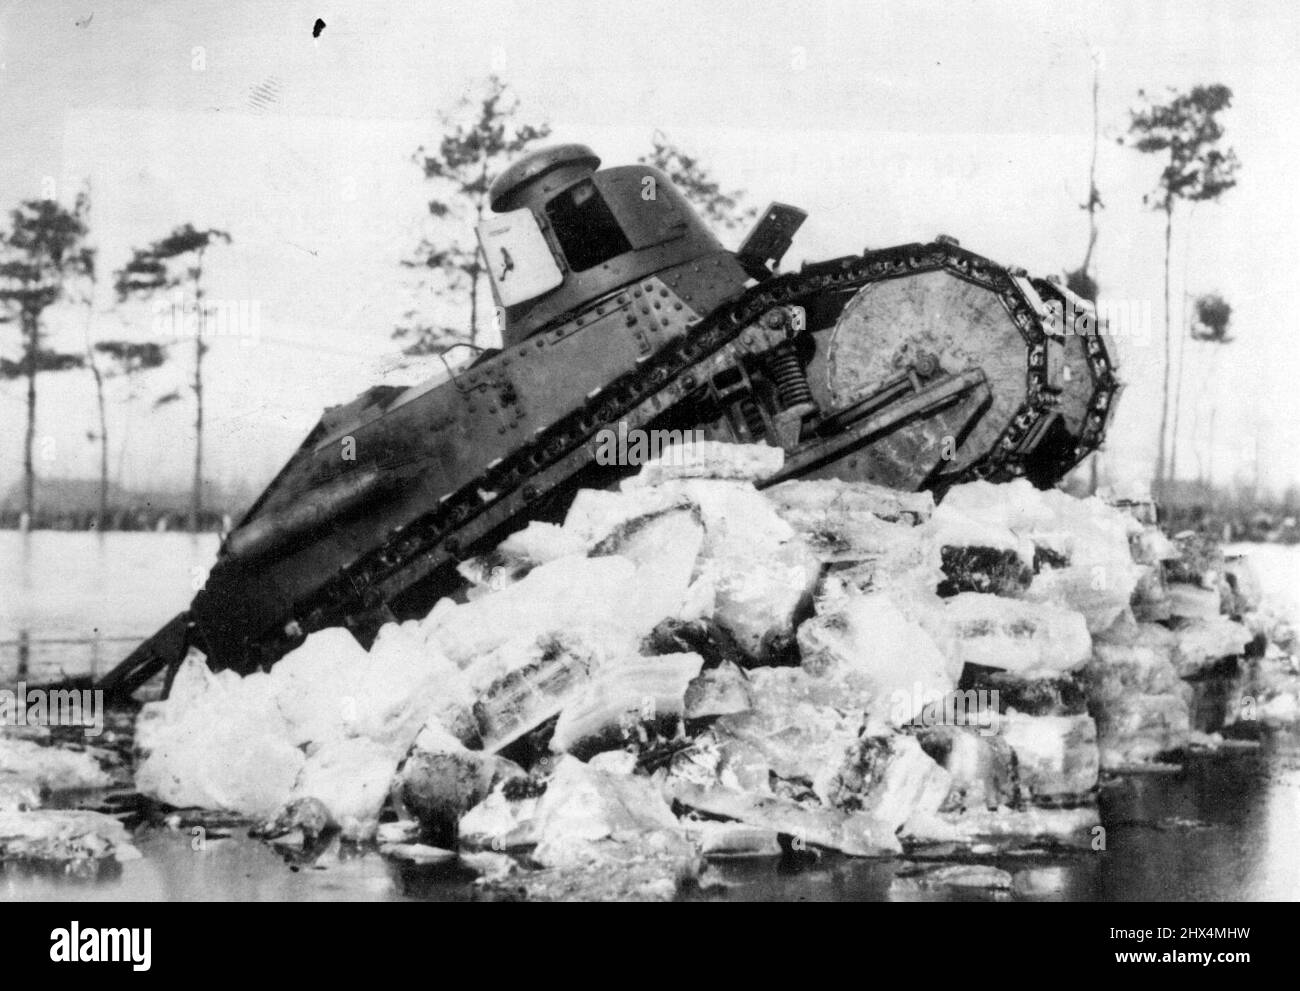 Krieg inmitten von Eis - zur Verteidigung überflutet, haben Gebiete wie diese im bitteren Winter Europas überfroren. Ein Panzer der niederländischen Armee testet den Eiswiderstand. 14. Februar 1940. Stockfoto